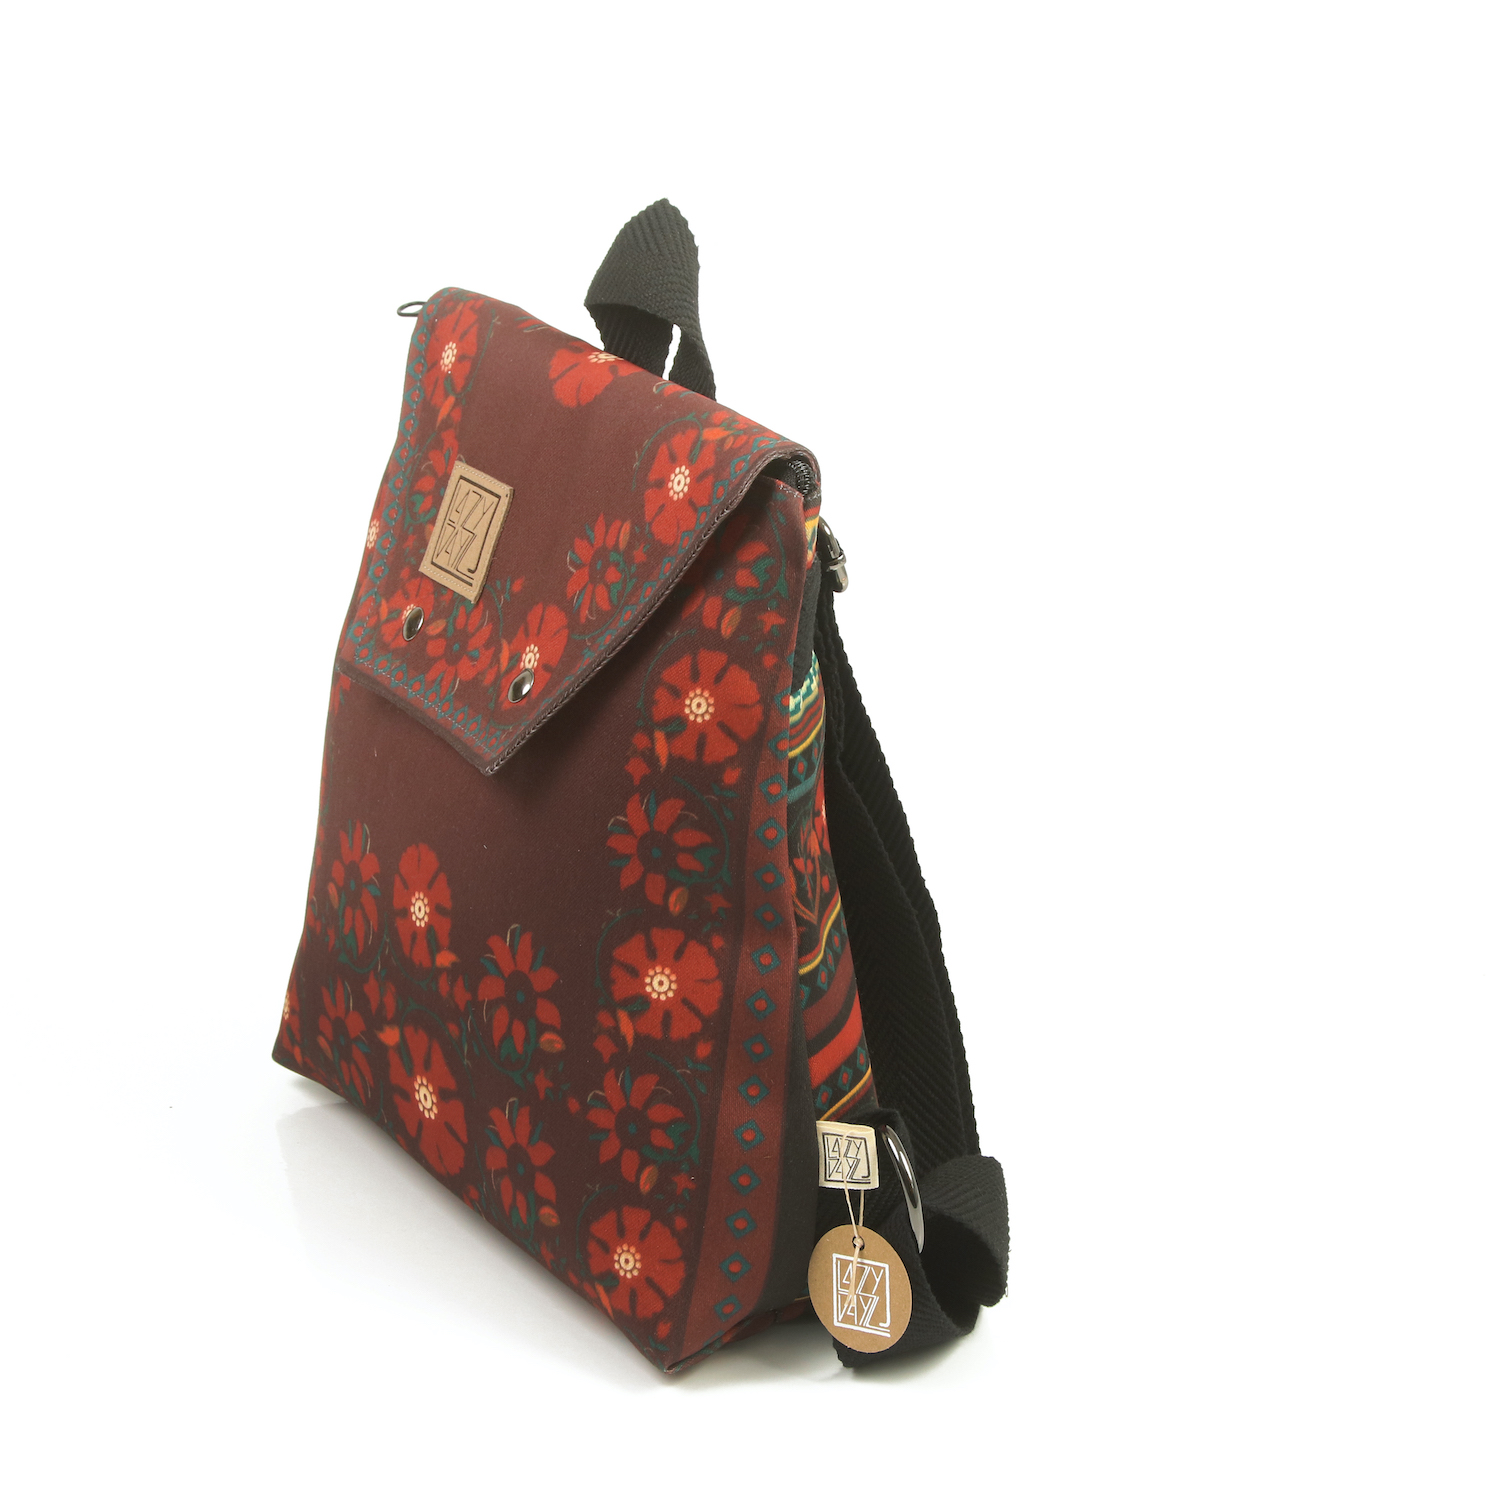 LazyDayz Designs Backpack γυναικείος σάκος πλάτης χειροποίητος bb0304b